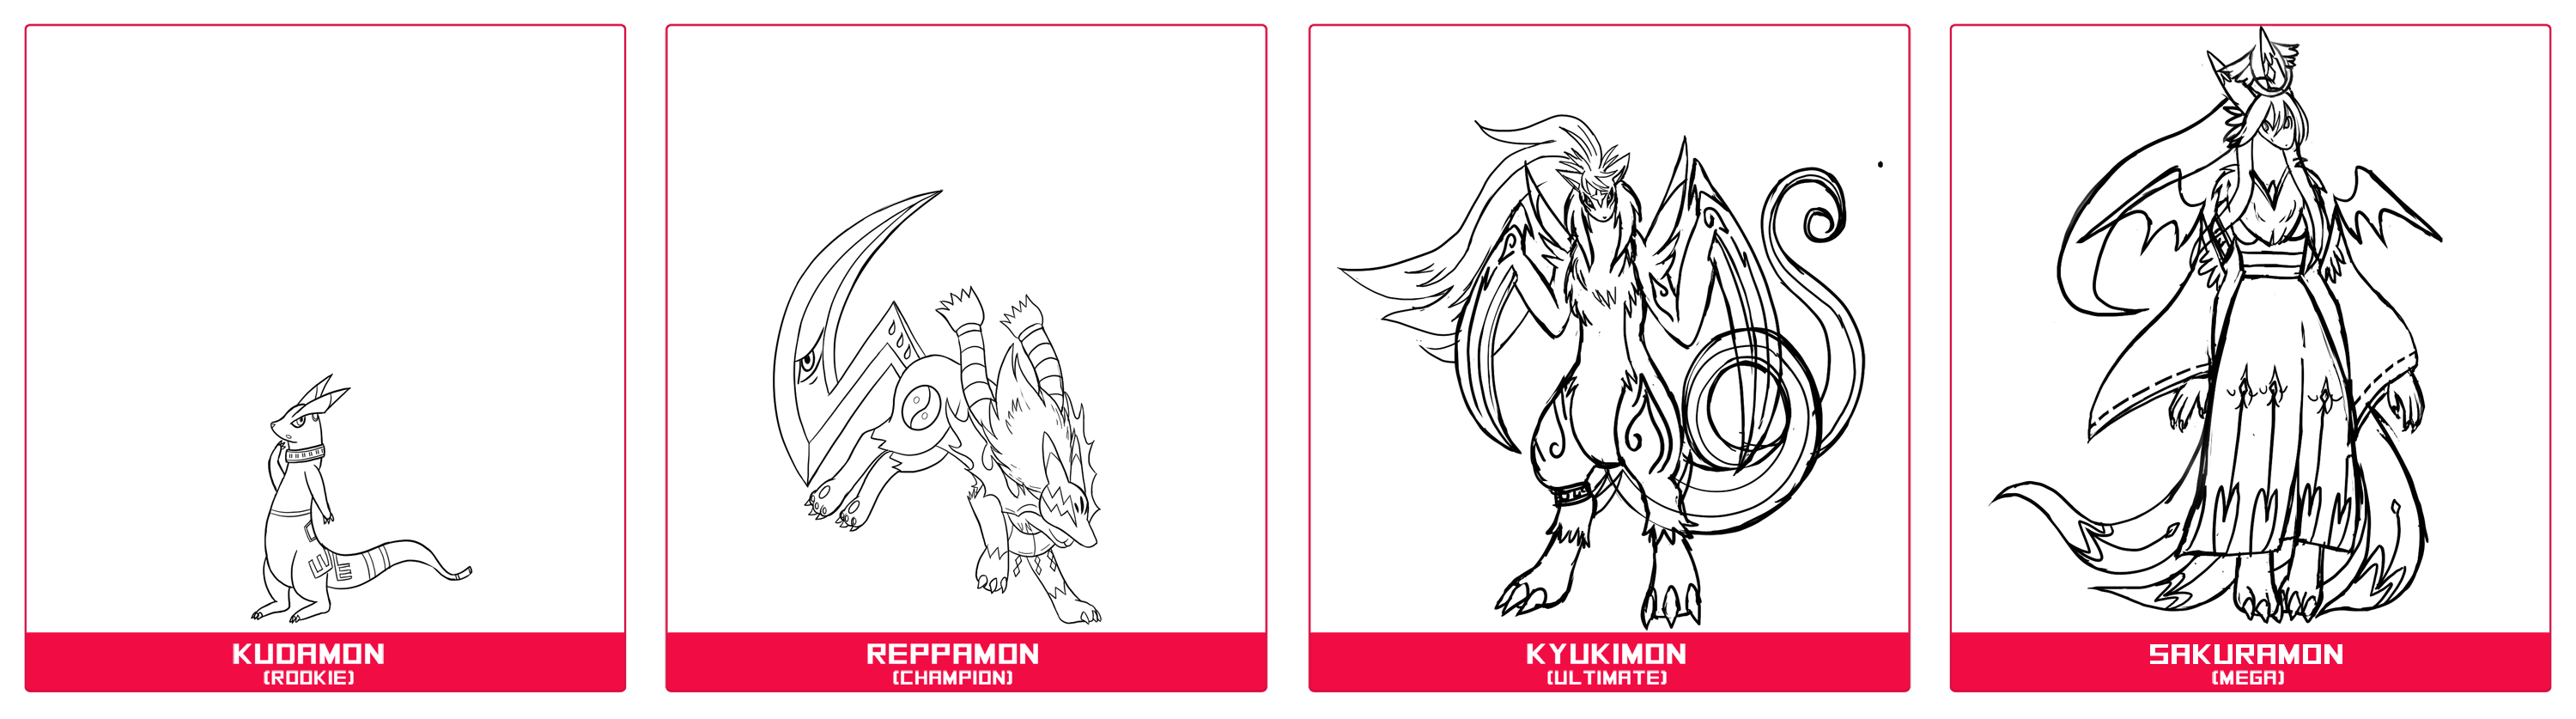 Digimon Line - Kudamon Line [Tiny].png